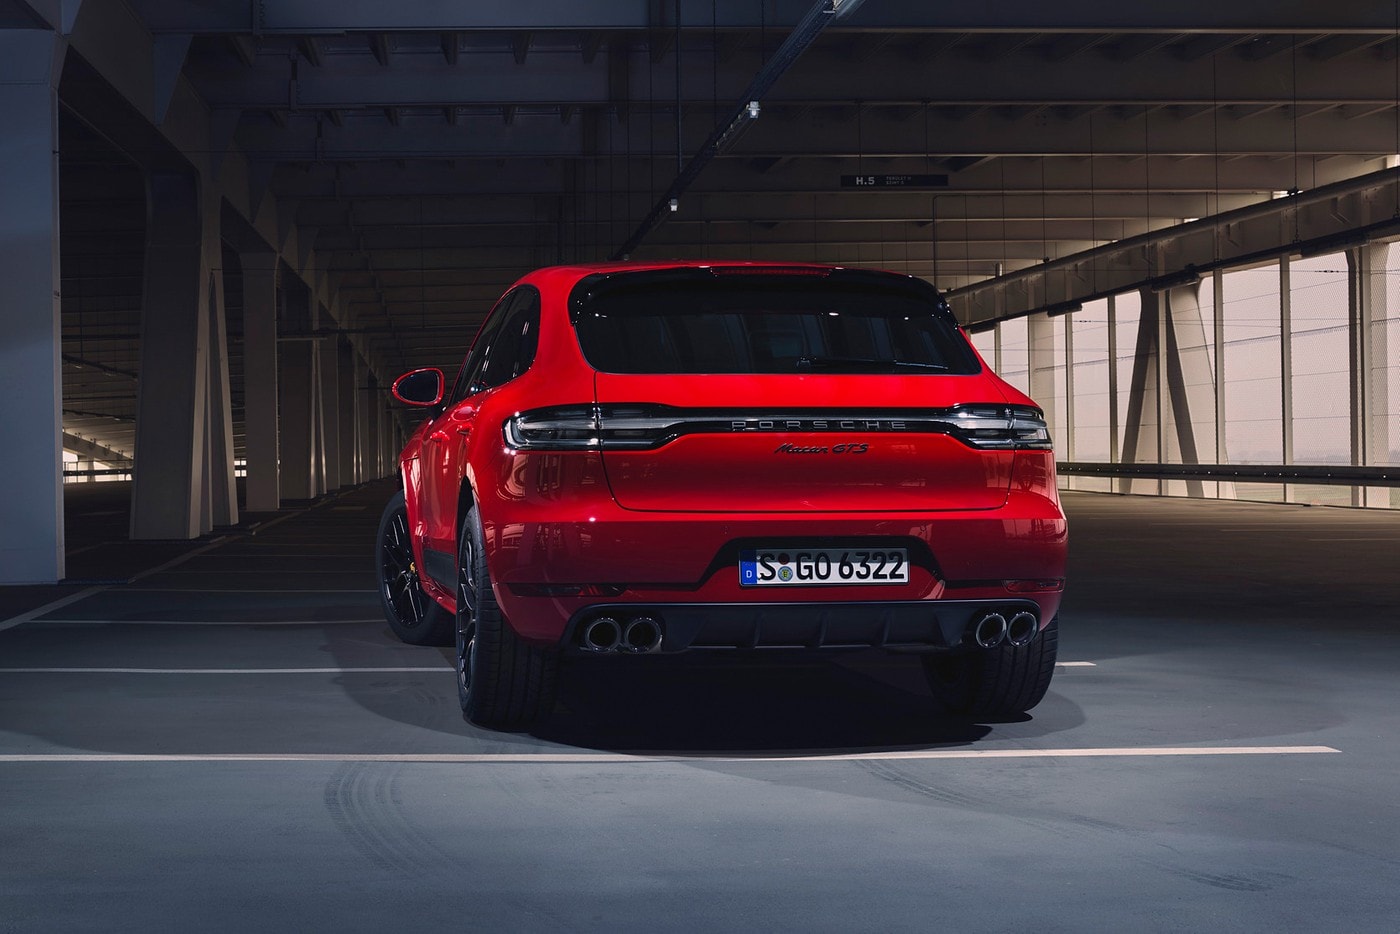 Porsche 發表全新 2020 年樣式 Macan GTS